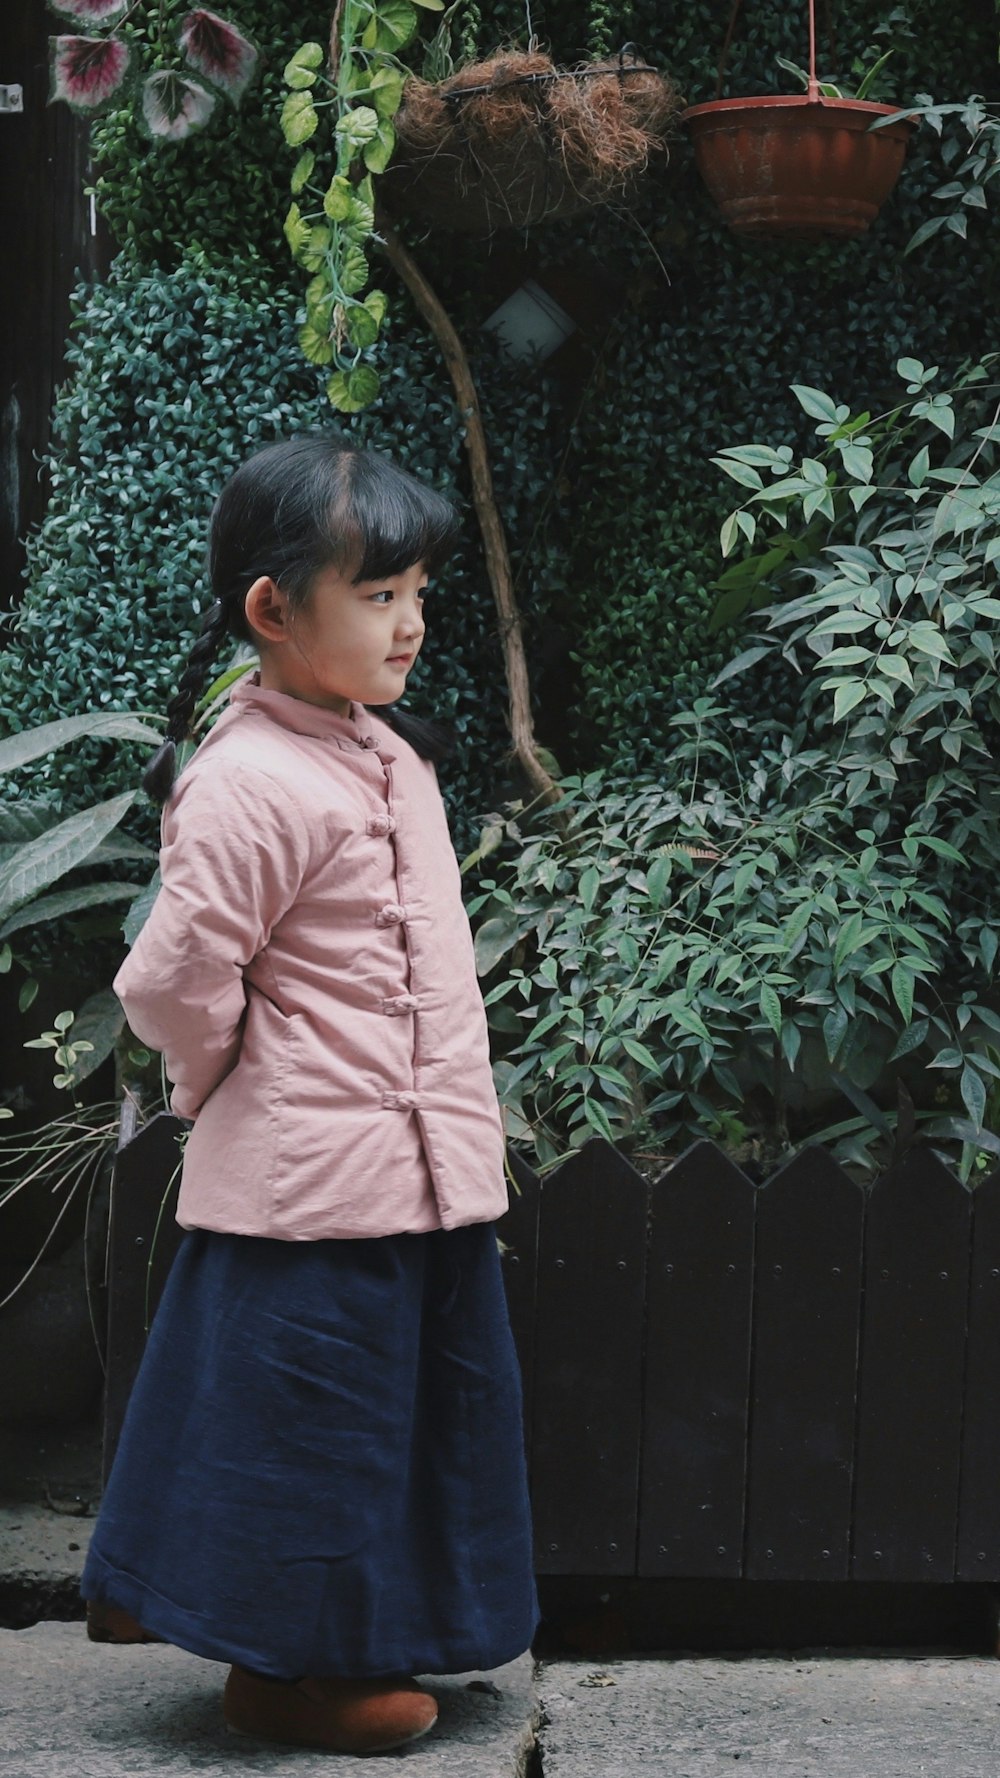 girl wearing pink jacket near plants